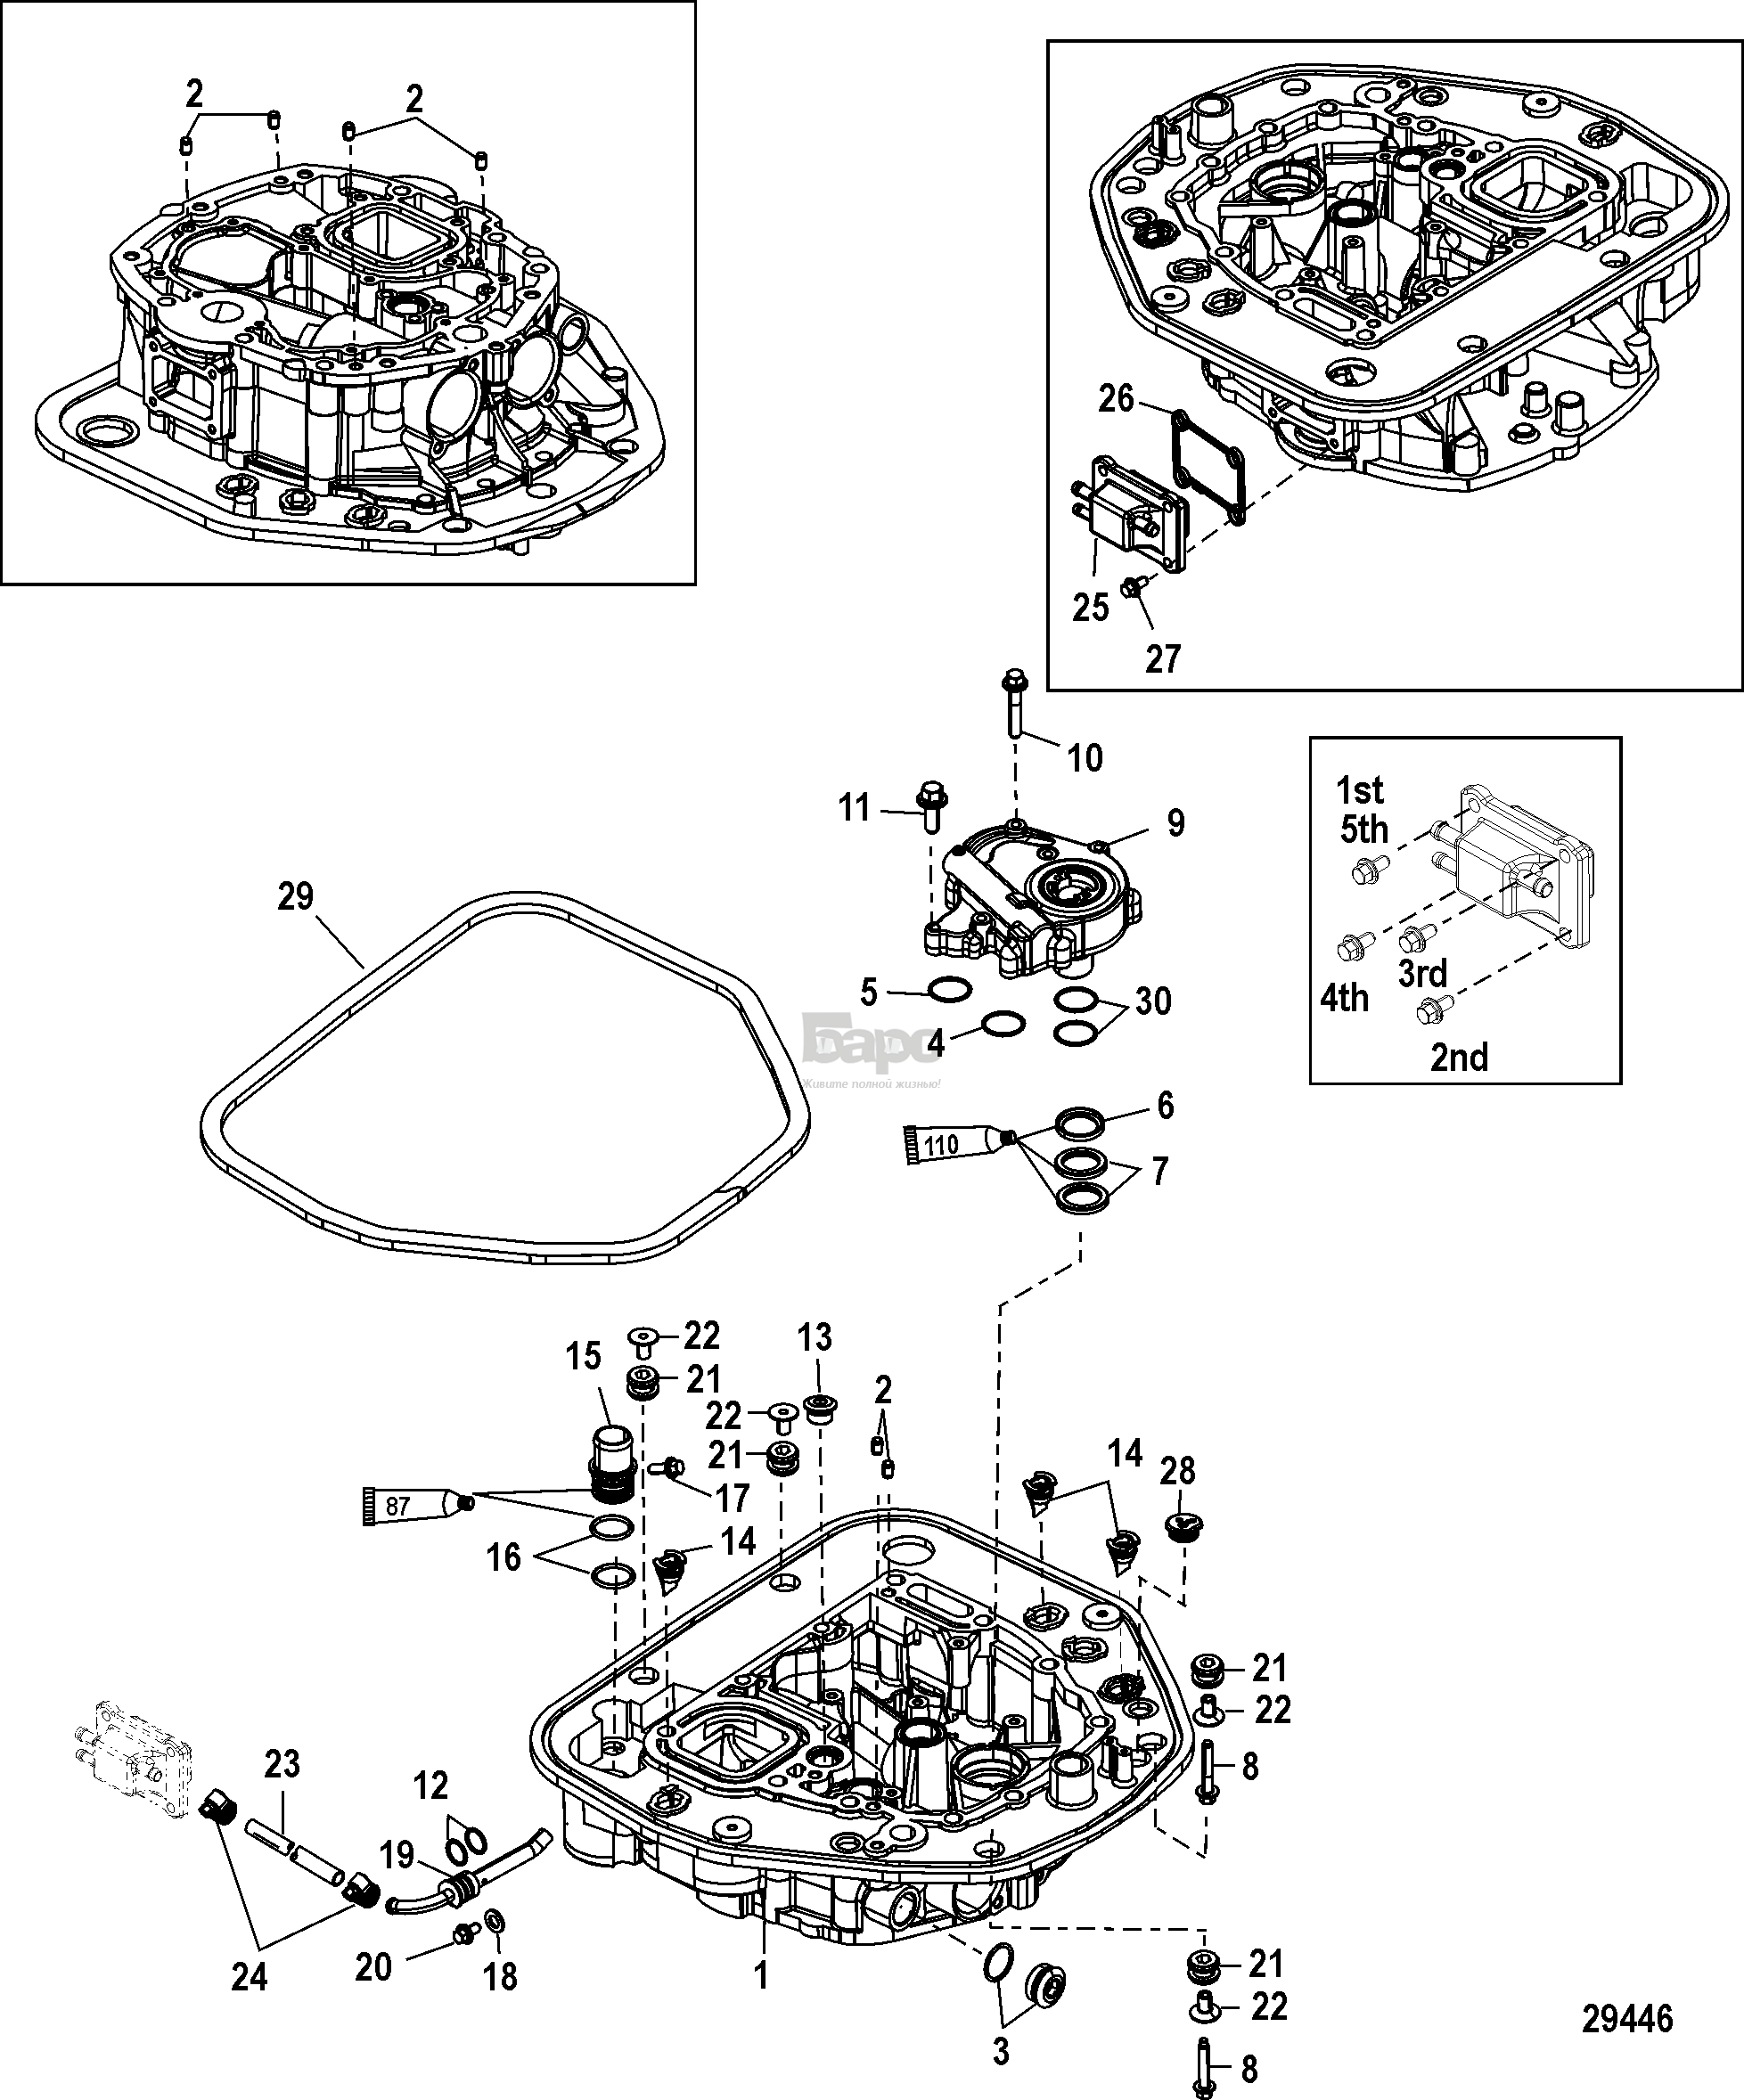 Oil Pump/Adaptor Plate-Upper